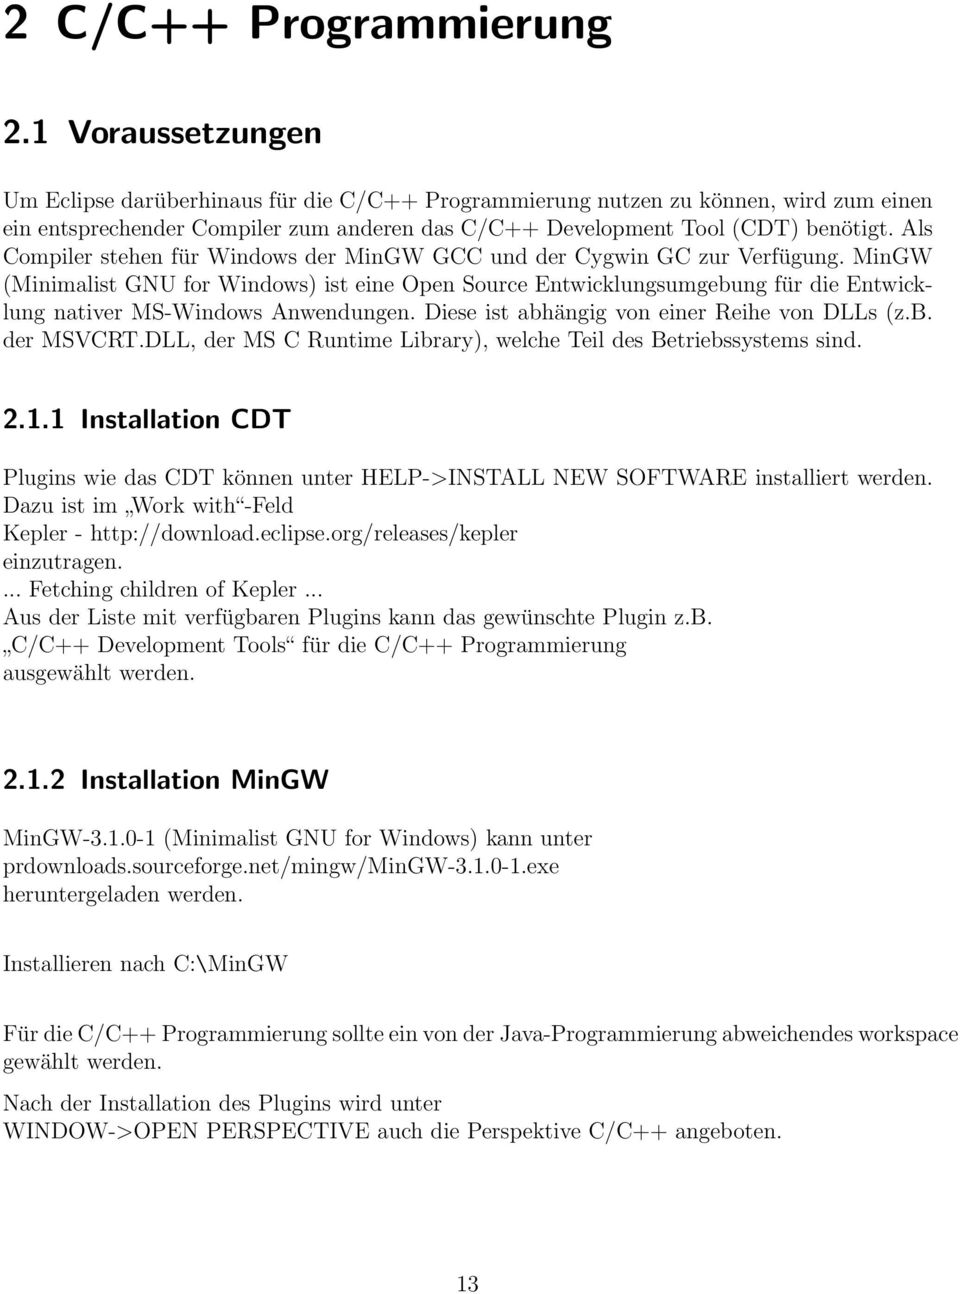 Als Compiler stehen für Windows der MinGW GCC und der Cygwin GC zur Verfügung.